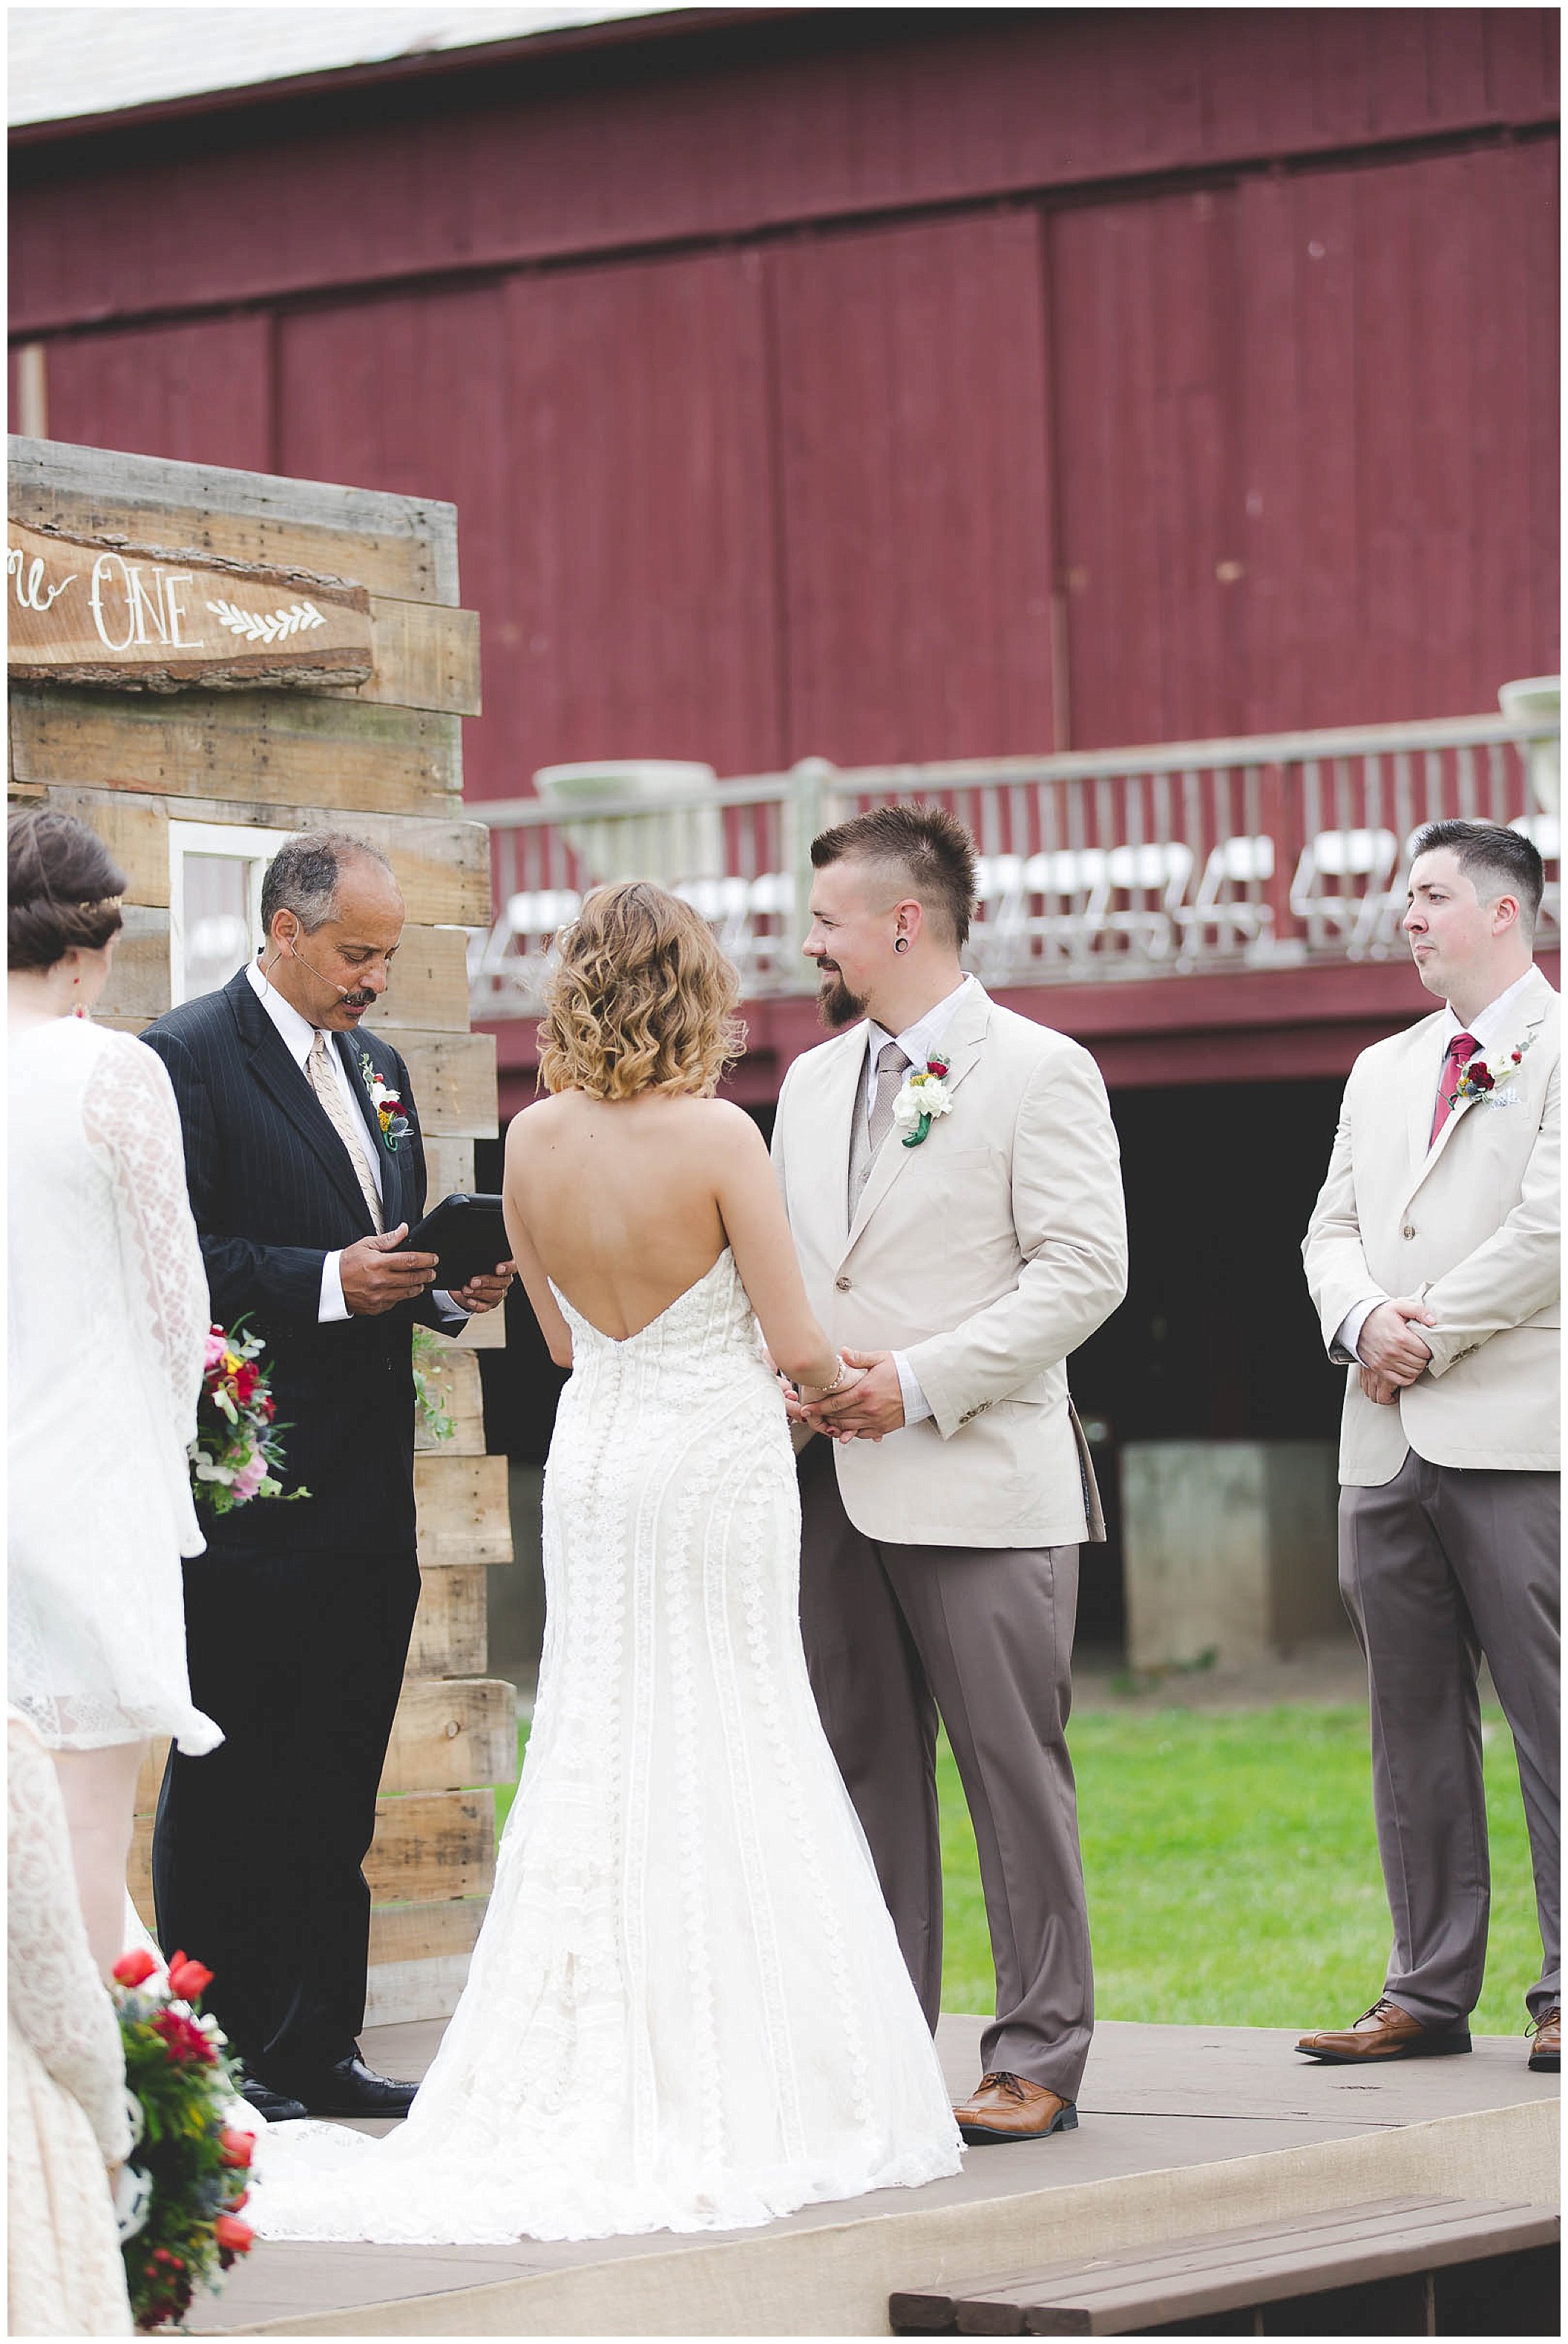 Victoria and Ian | Marian Hills Farm Wedding | Natalie Kunkel Photography